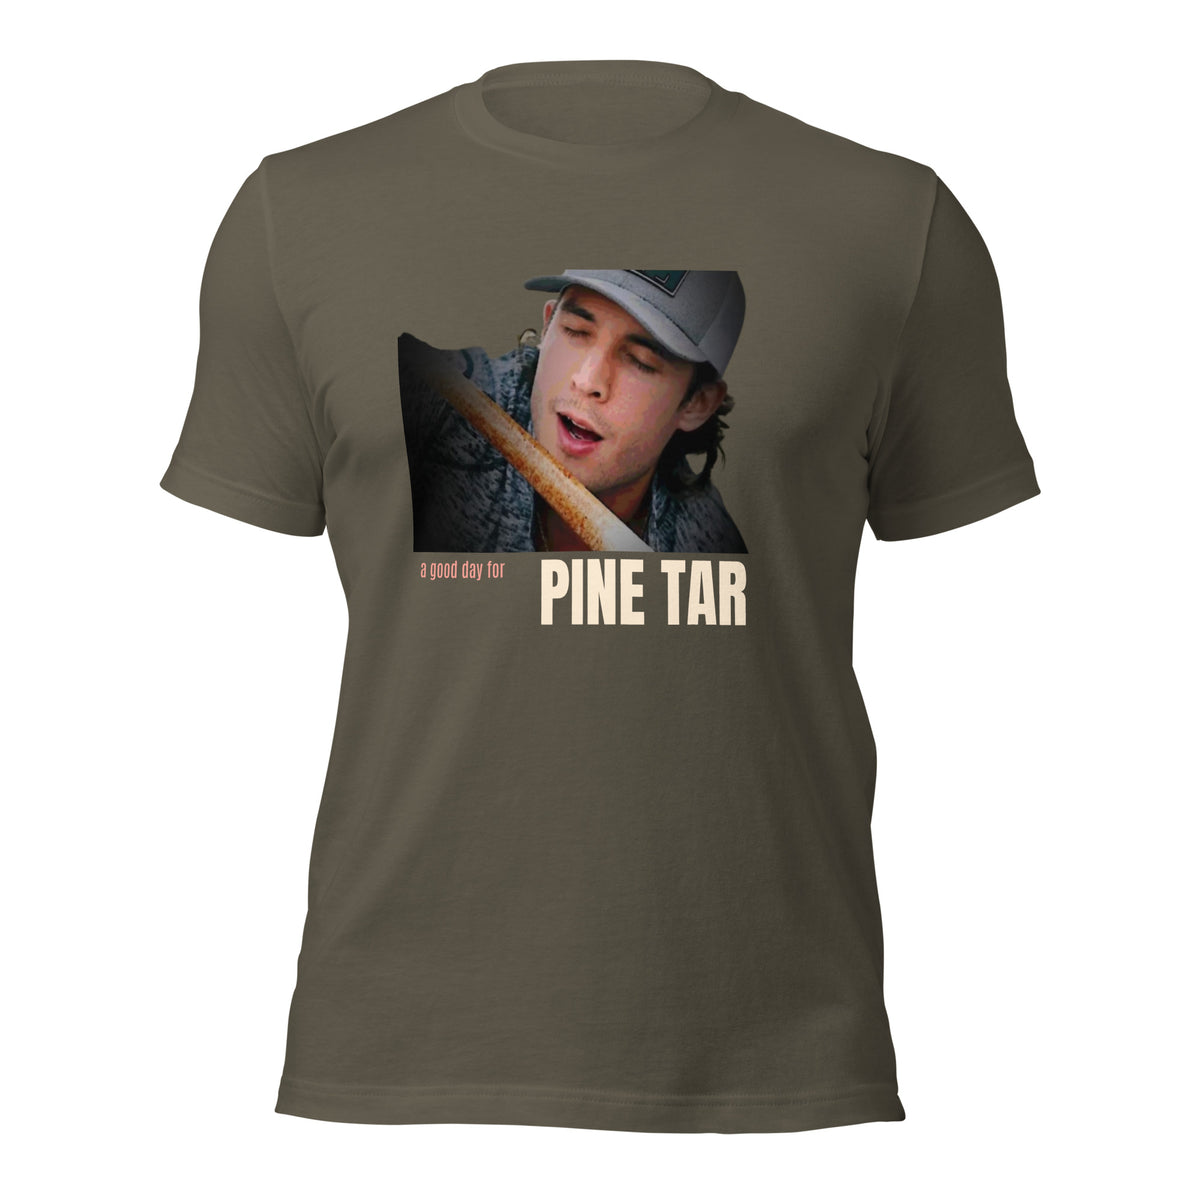 Pine Tar Tee